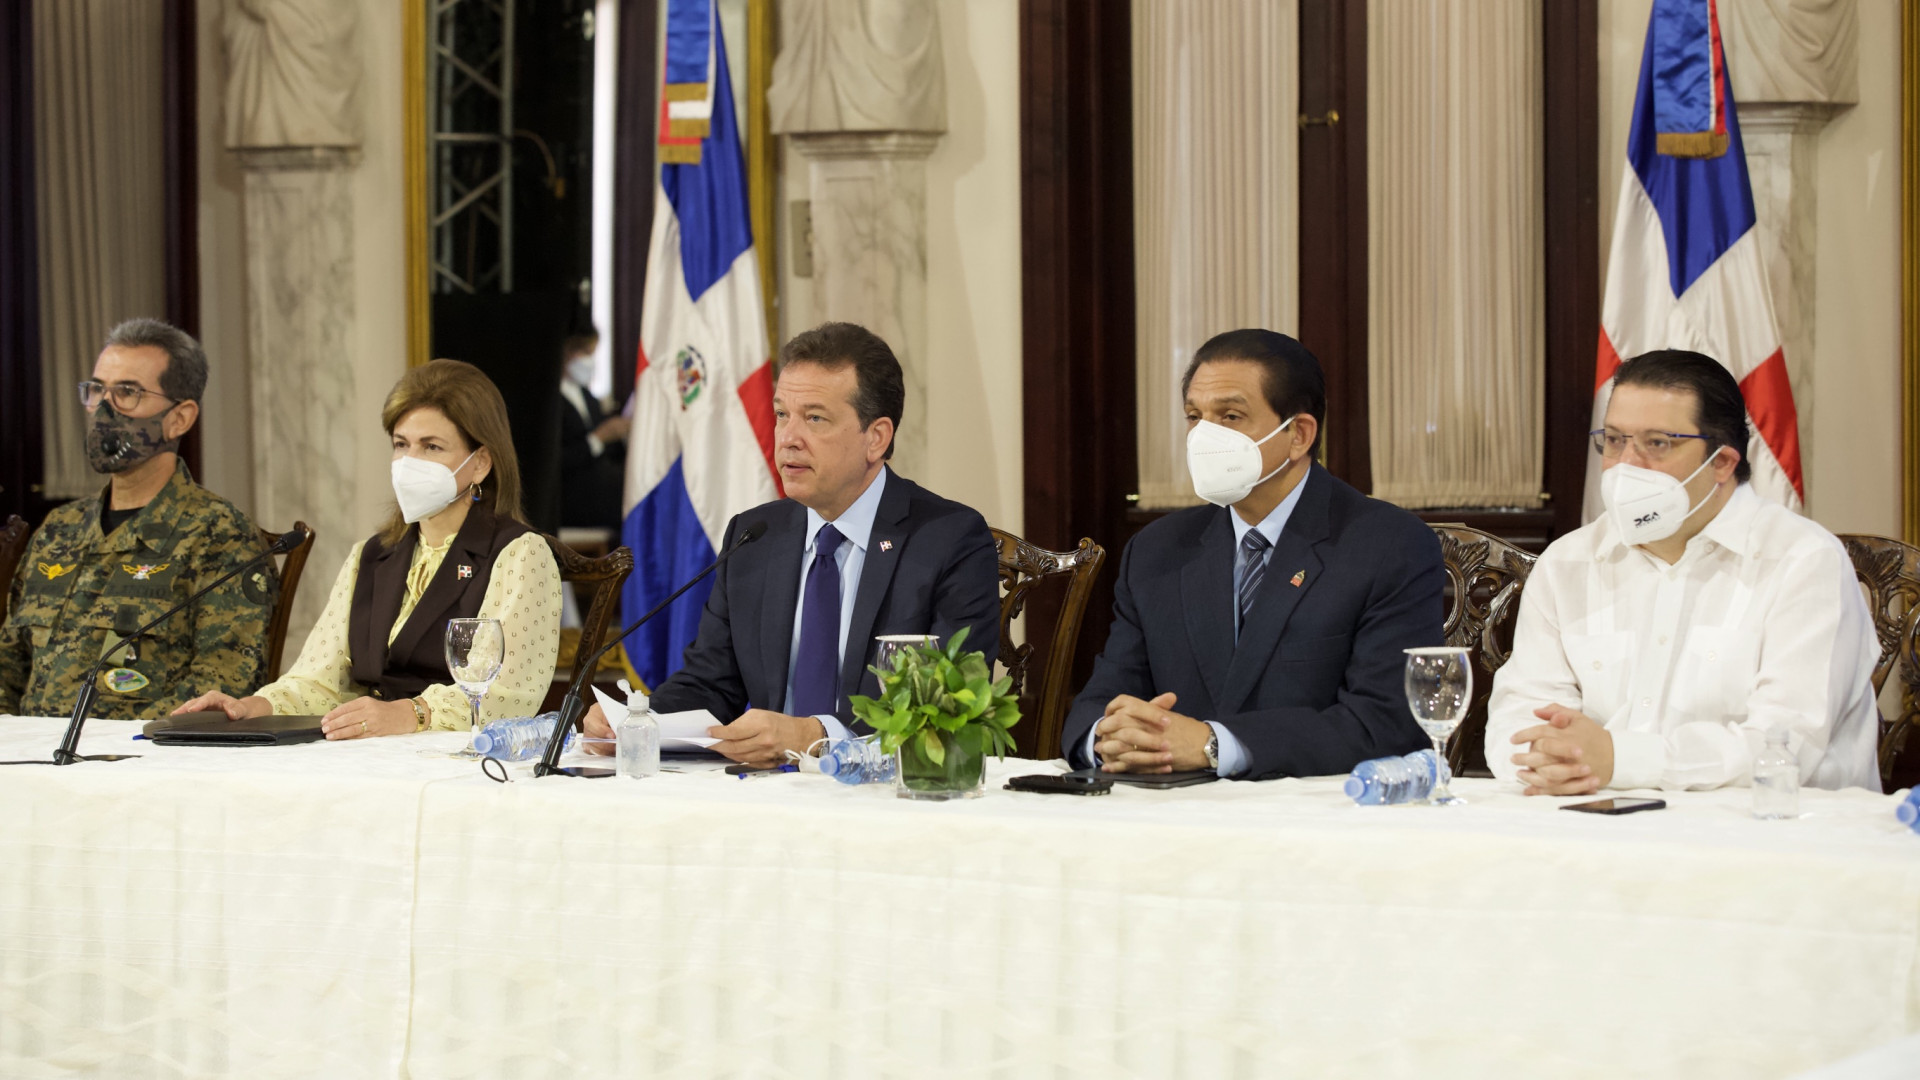 REPÚBLICA DOMINICANA: Gobierno promulga decreto que regula el metanol